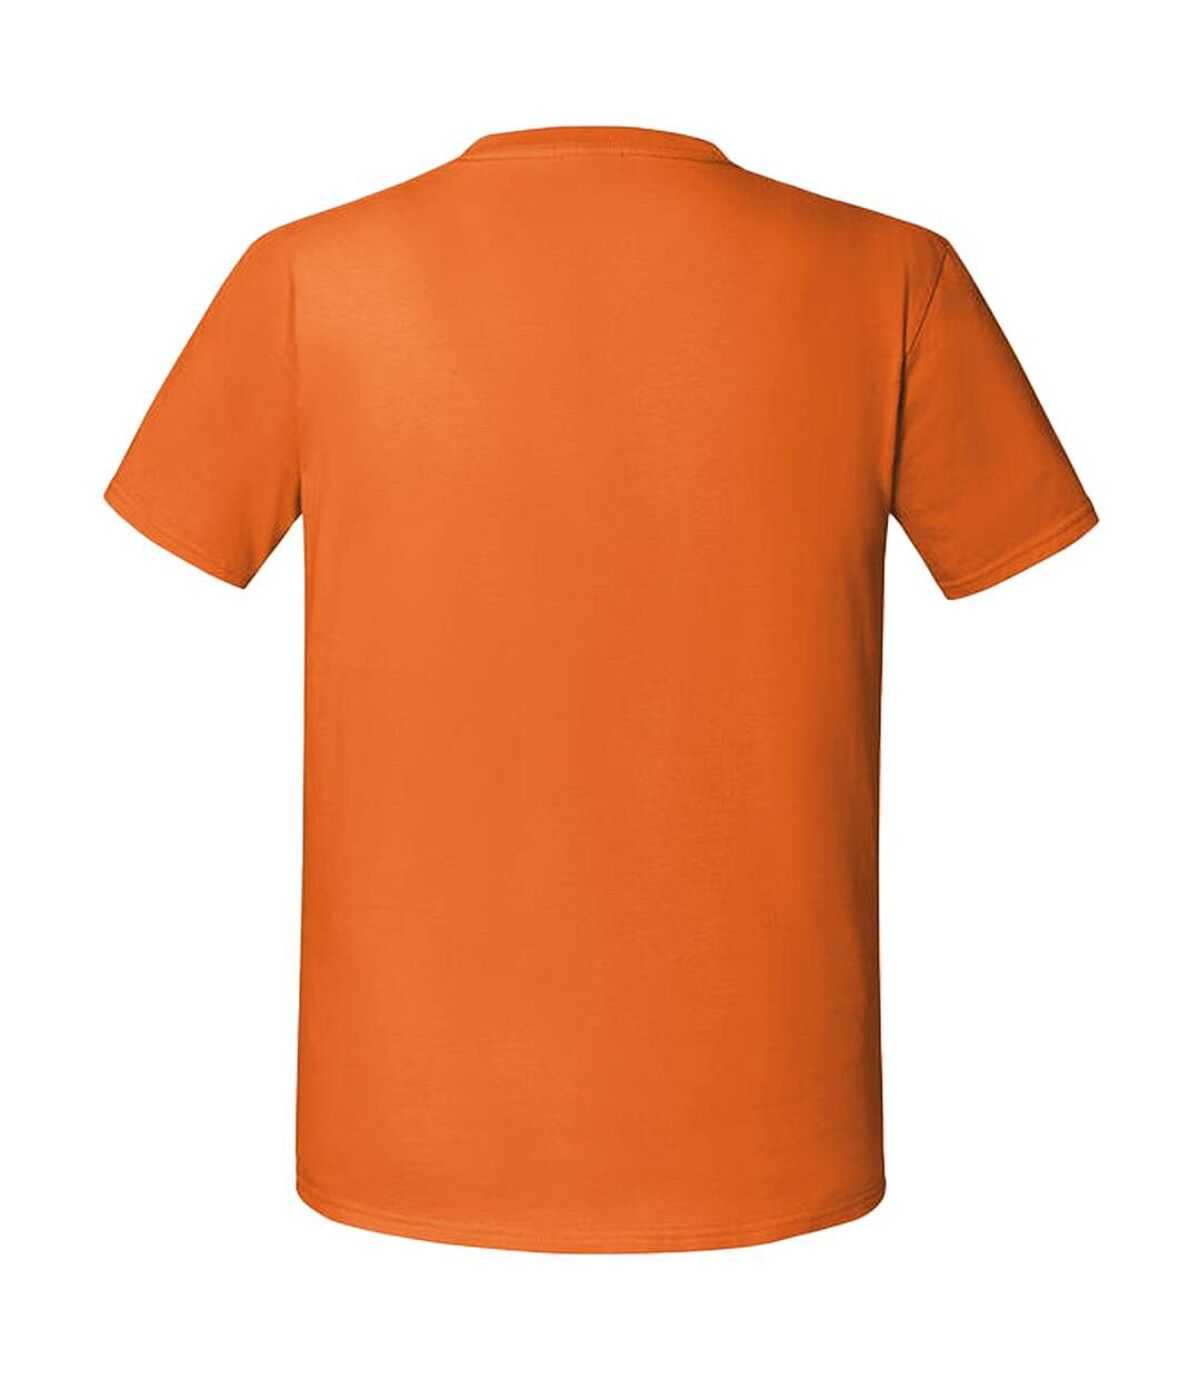 Fruit Of The Loom - T-shirt - Hommes (Orange) - UTRW5974